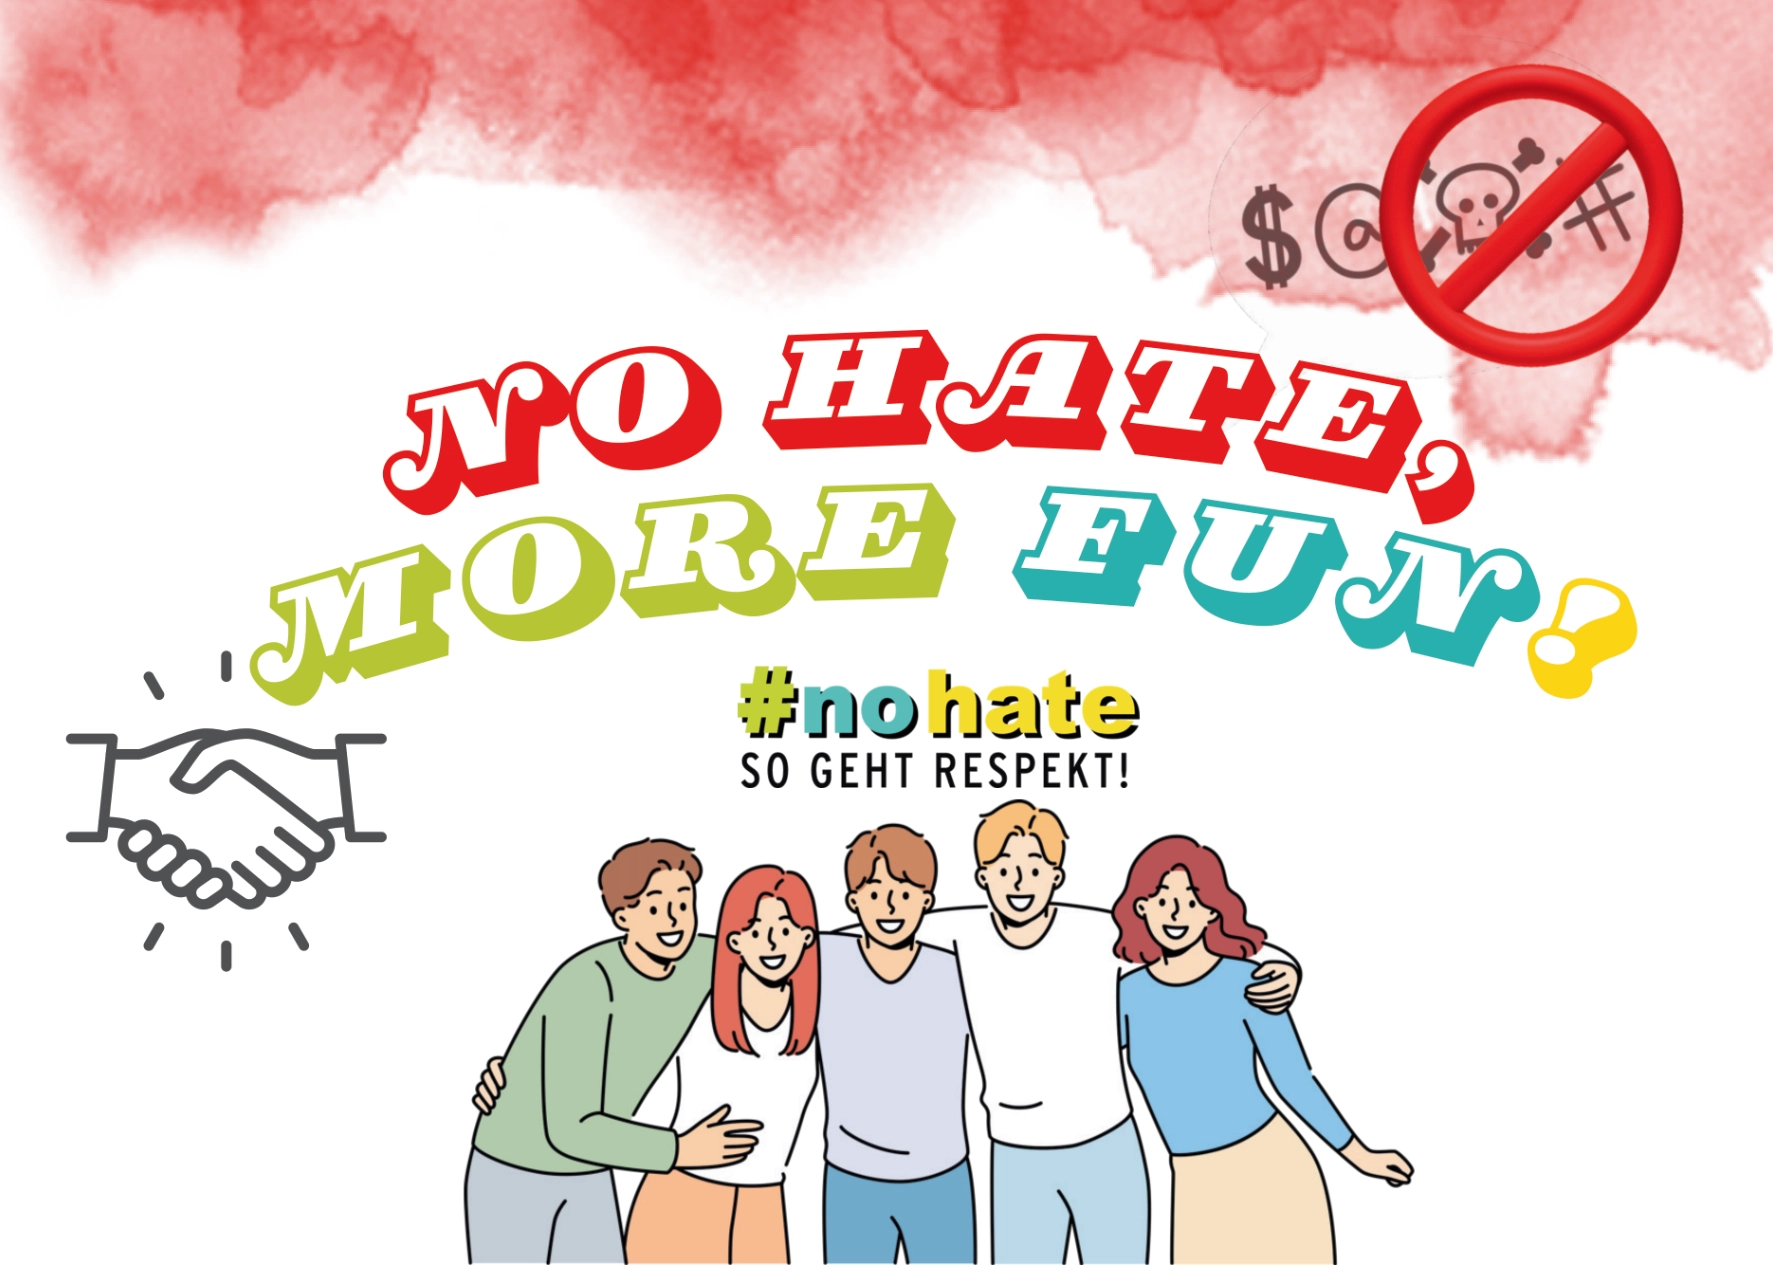 Postkarten- und Stickermotiv "No hate, more fun!"